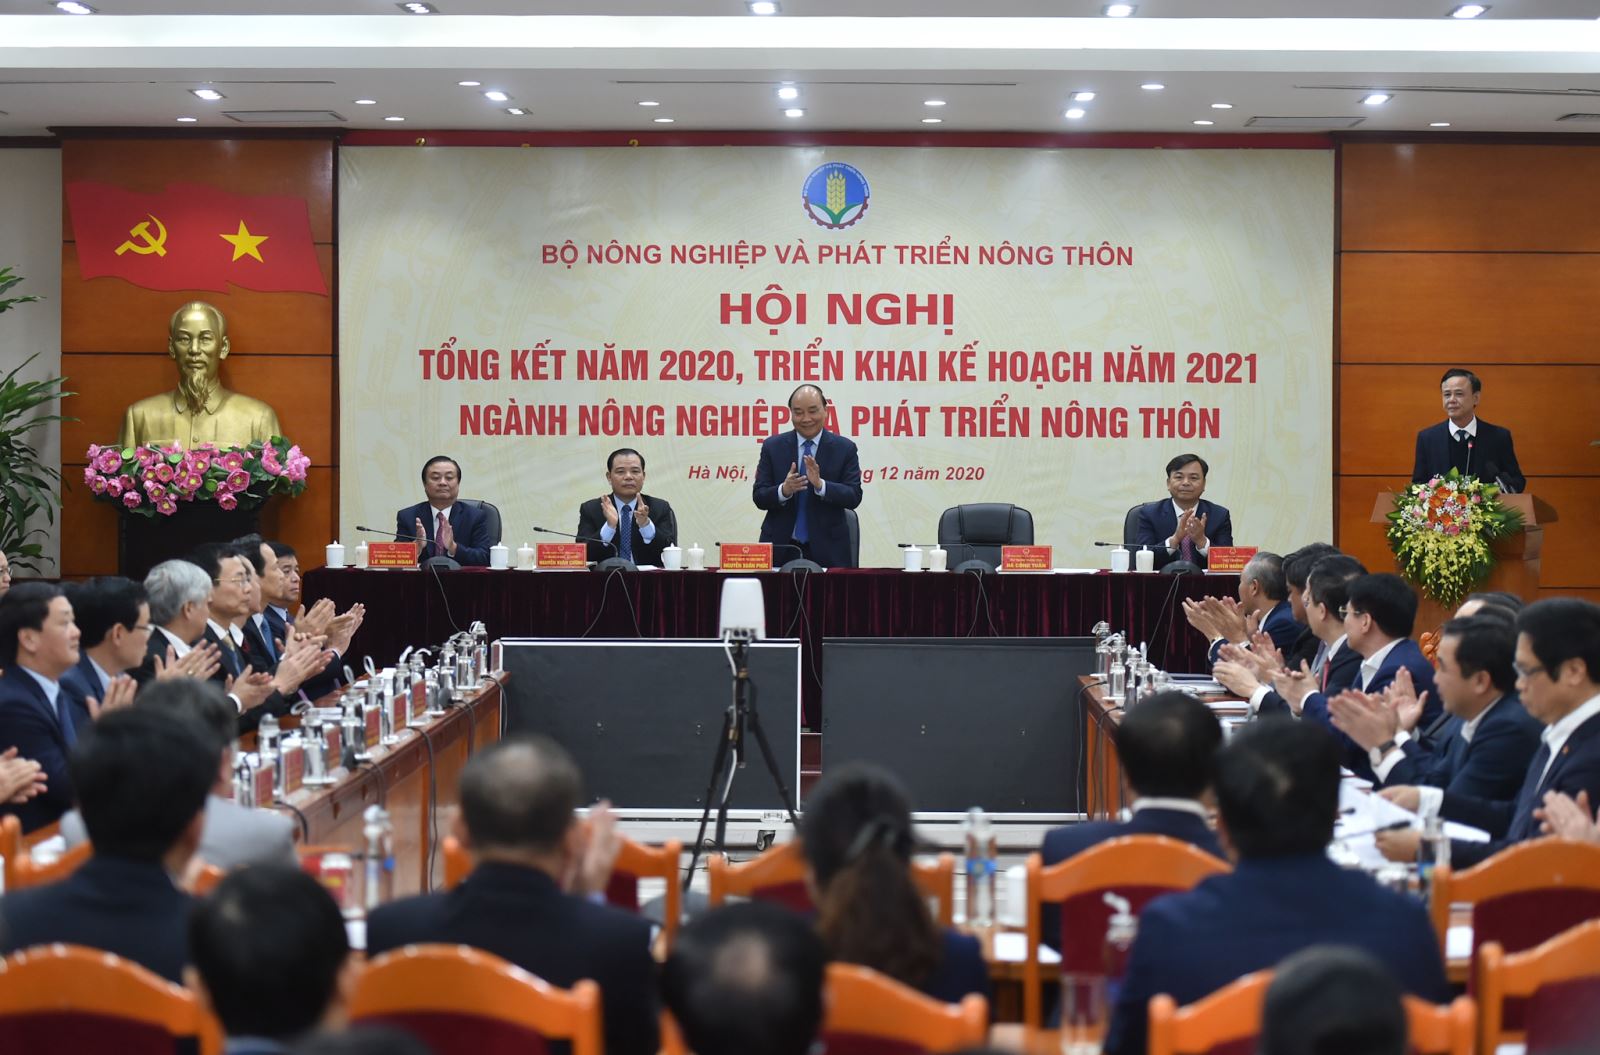 Thủ tướng Nguyễn Xuân Phúc dự Hội nghị trực tuyến tổng kết ngành NN&PTNT năm 2020, triển khai kế hoạch năm 2021. Ảnh: VGP/Quang Hiếu